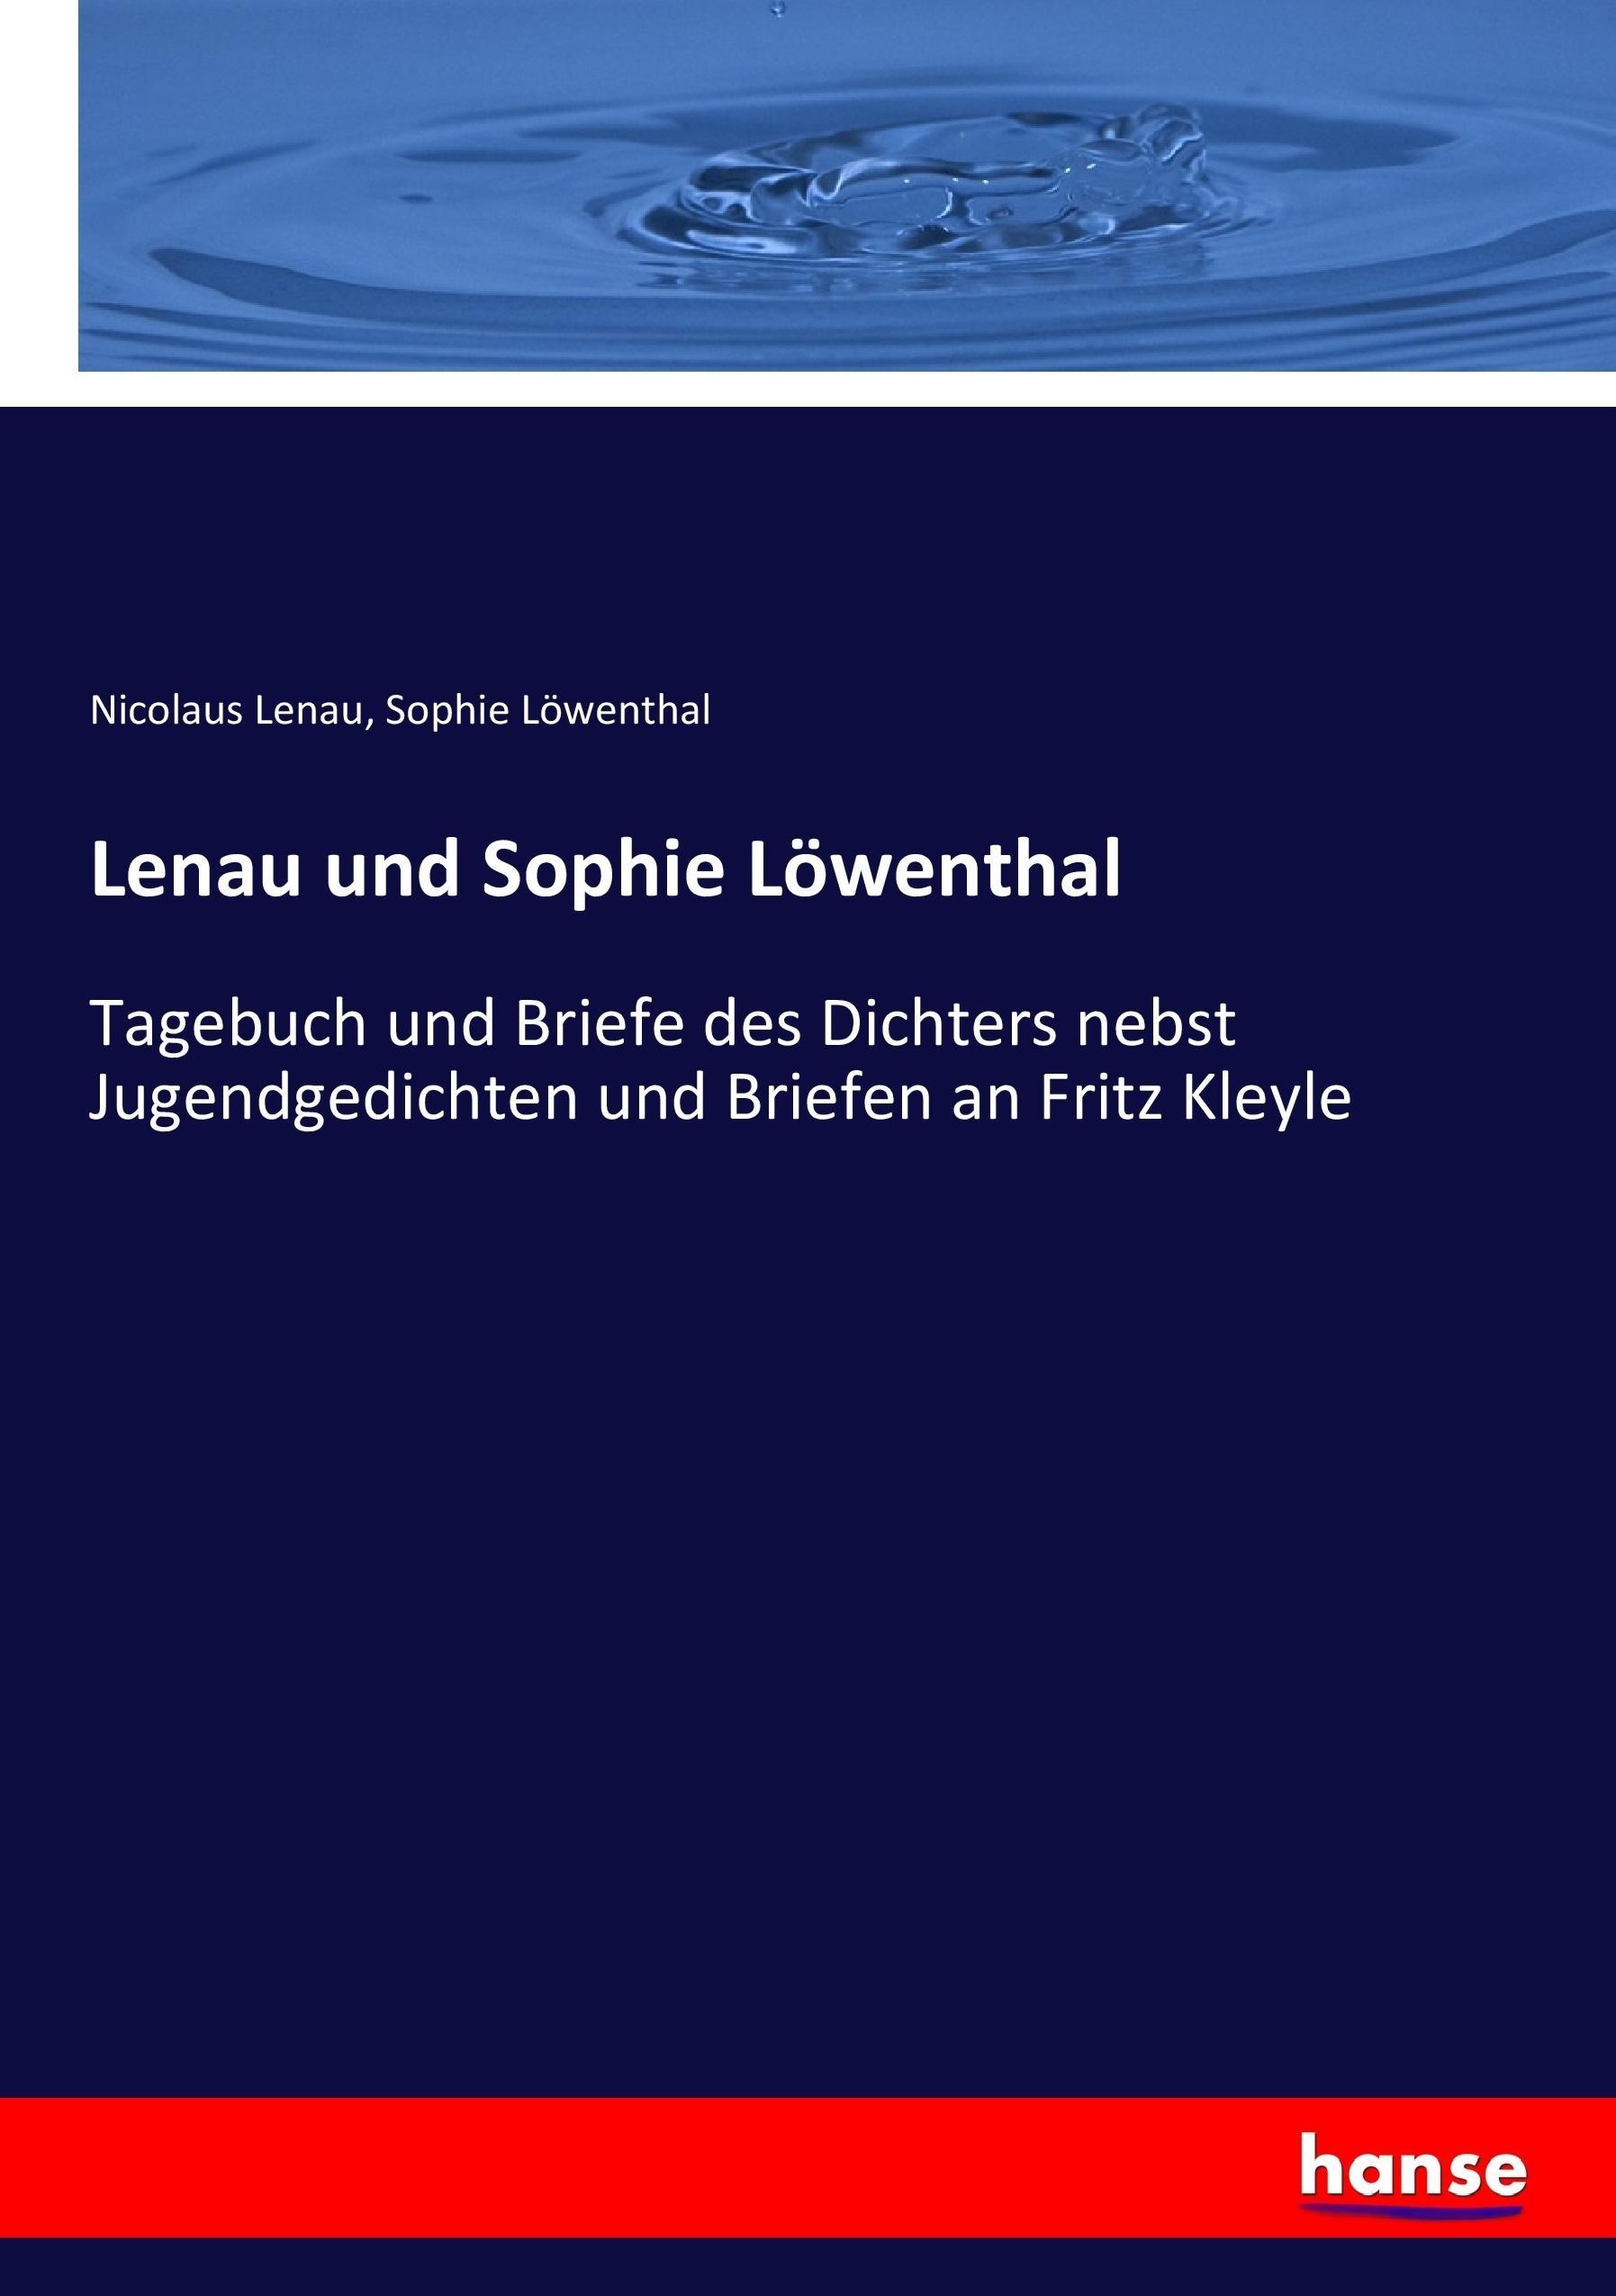 Lenau und Sophie Loewenthal - Lenau, Nicolaus Loewenthal, Sophie